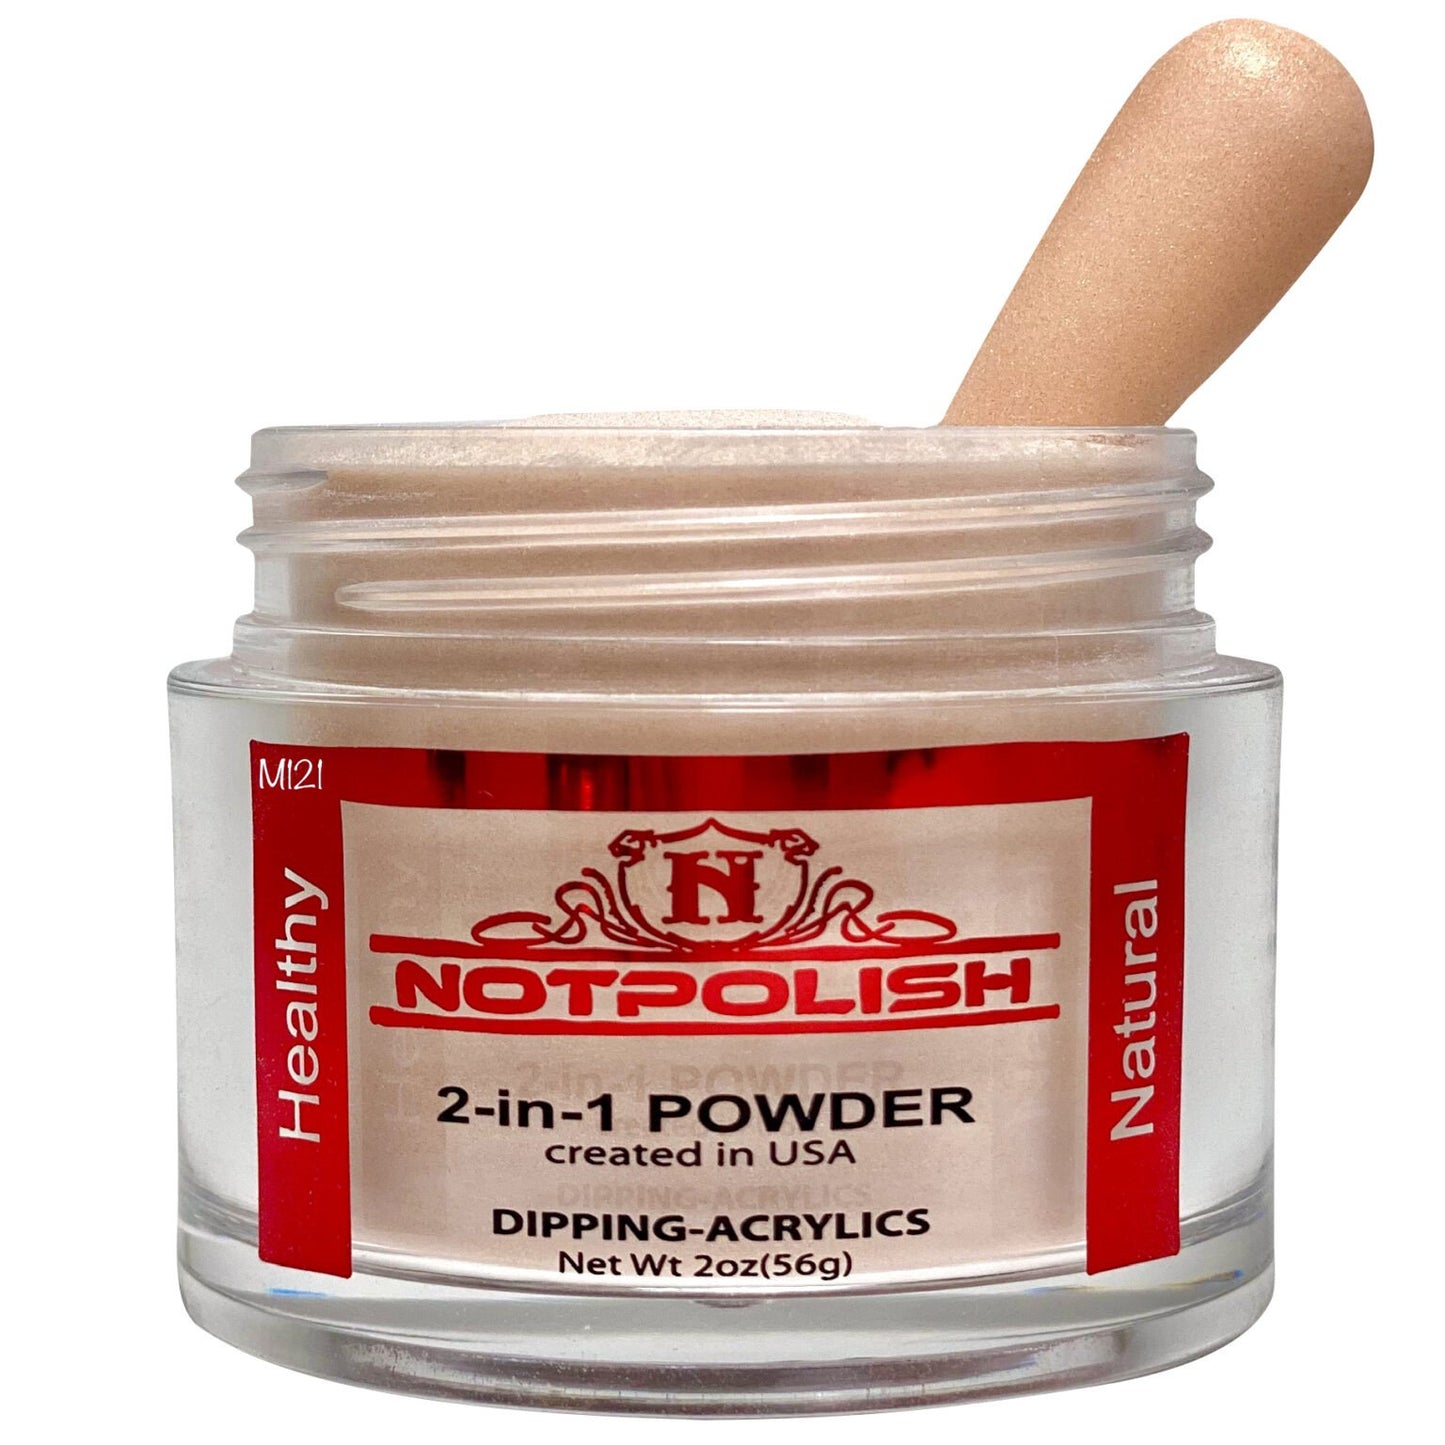 Notpolish Matching Powder M121 - Creme Brulee